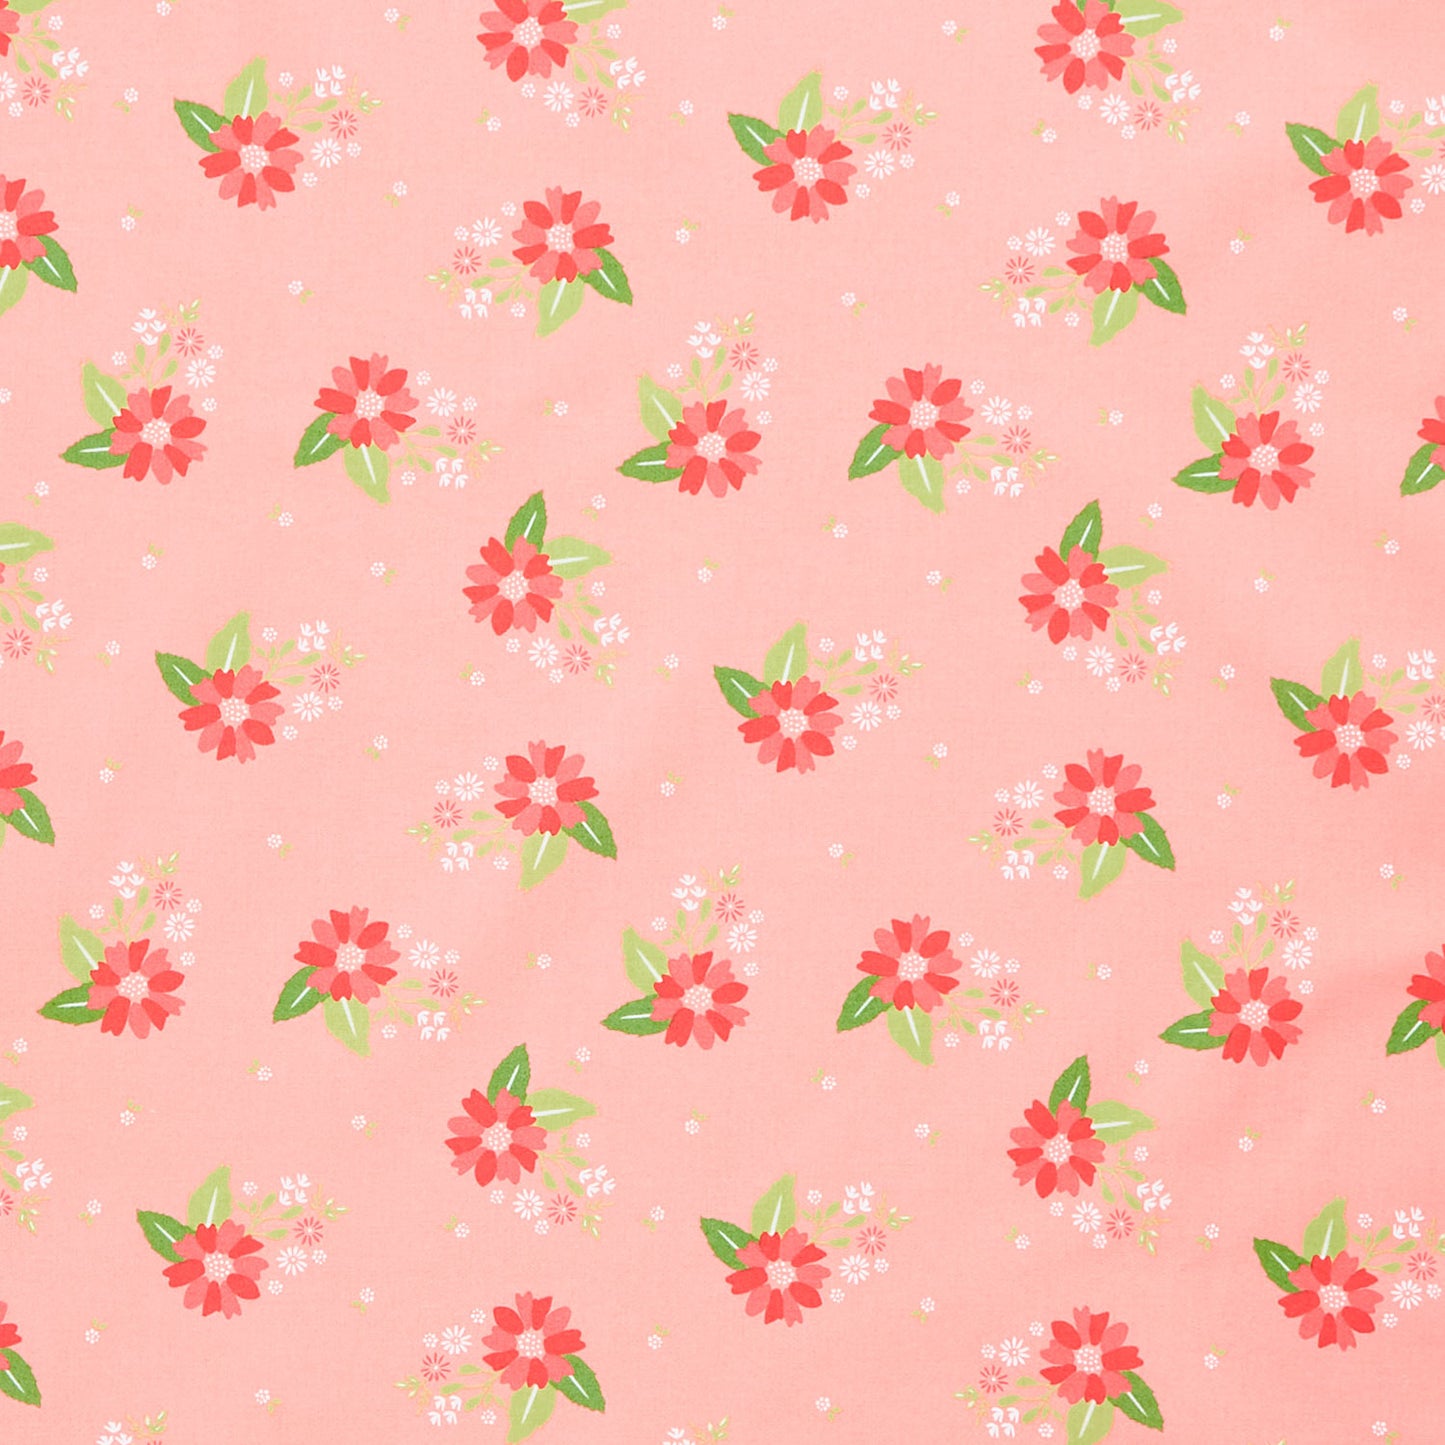 Strawberry Lemonade - Carnation Carnation Yardage Primary Image